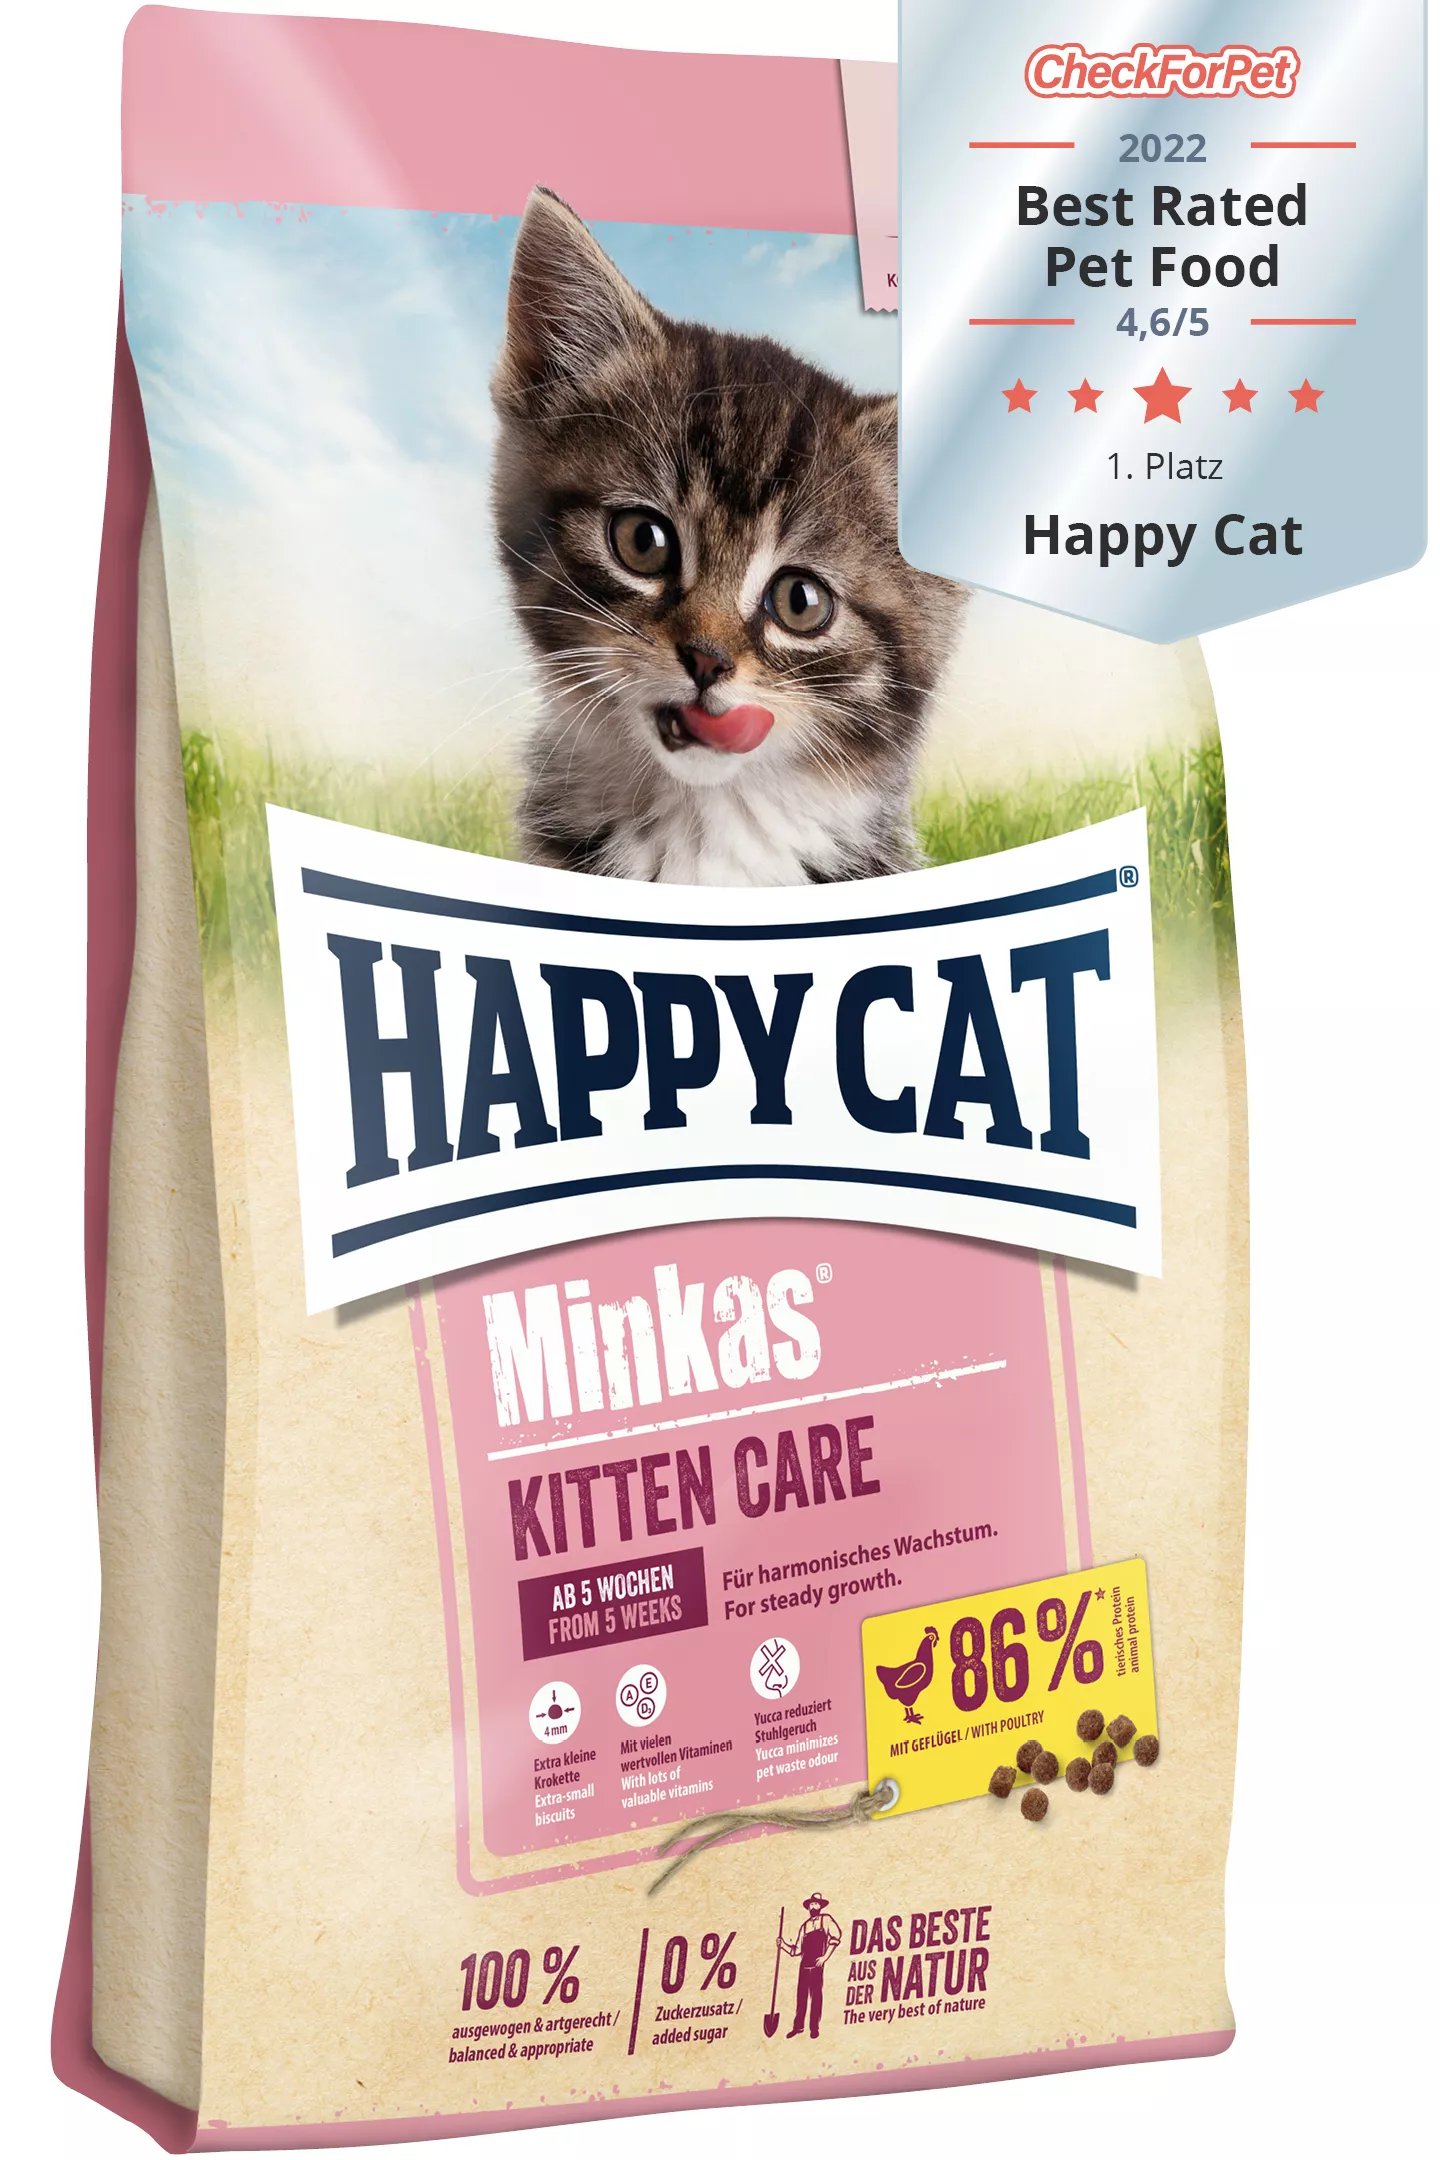 Happy Cat Minkas Kitten Care Geflügel 500 g